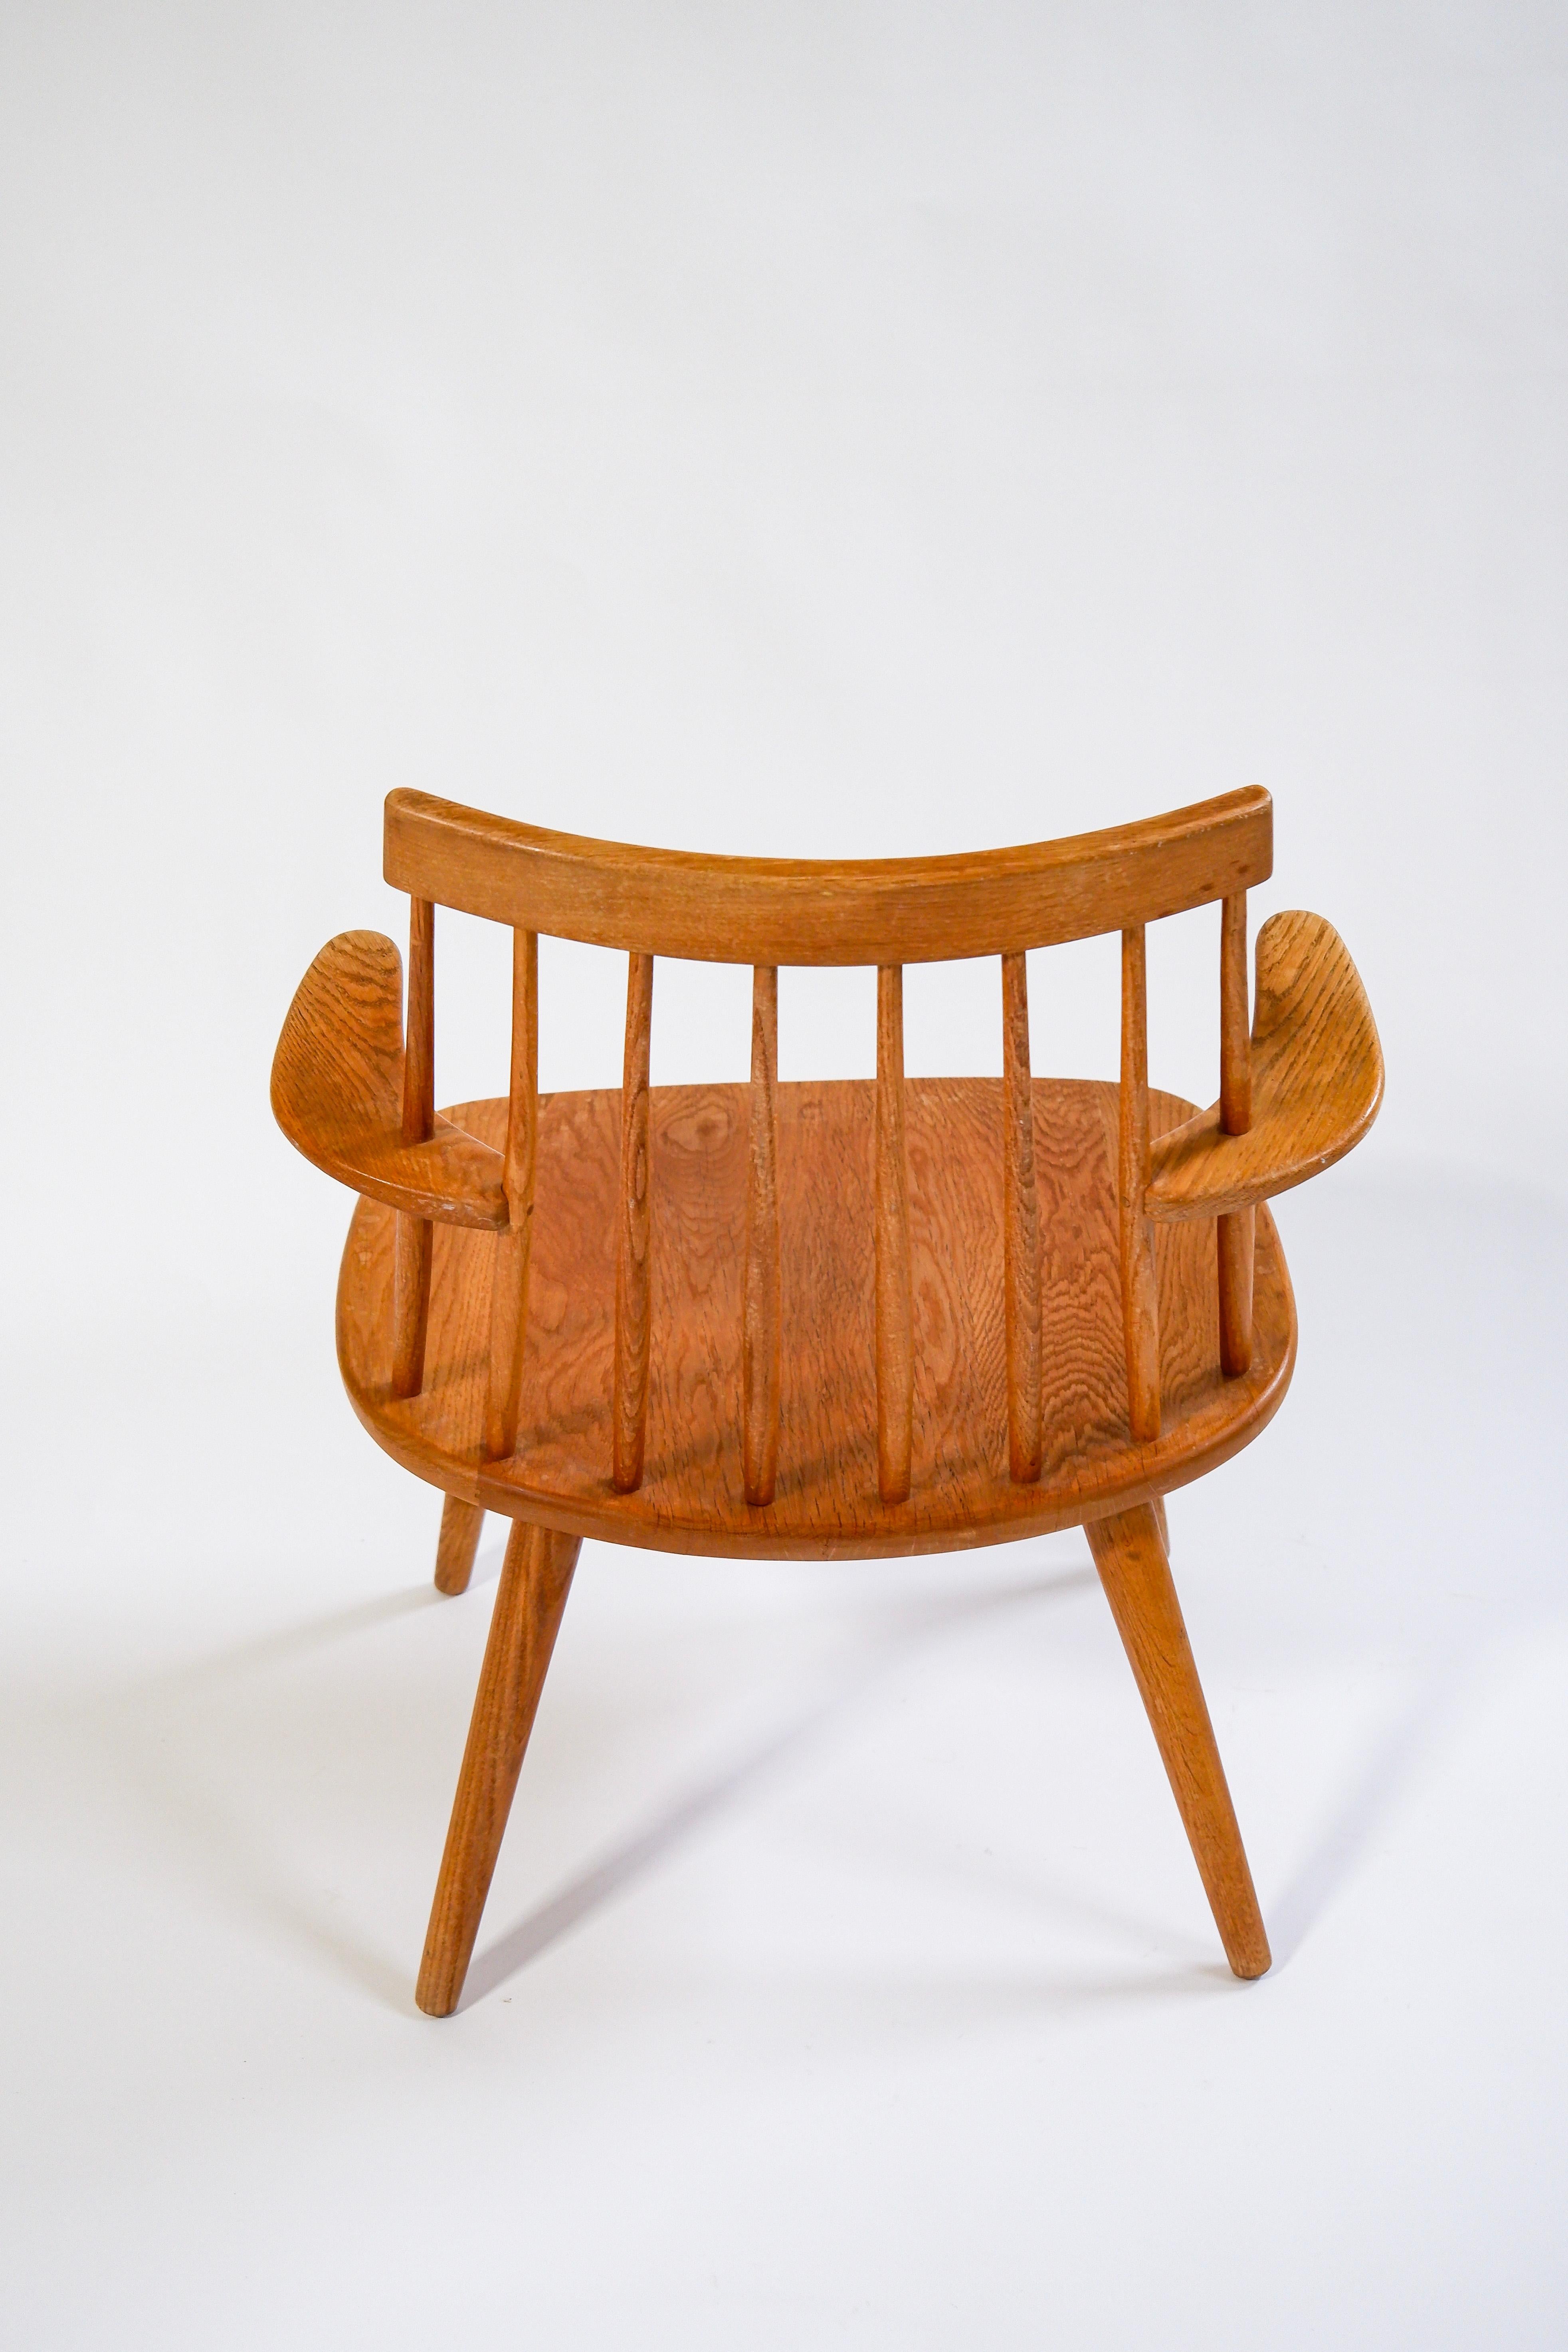 Chaise à accoudoirs Yngve Ekström modèle Sibbo en chêne massif conçue en 1955 pour Stolab AB en Suède. Bon état général. Coussin original disponible. Yngve Ekström est l'un des designers les plus influents de la seconde partie du siècle en Suède. Il